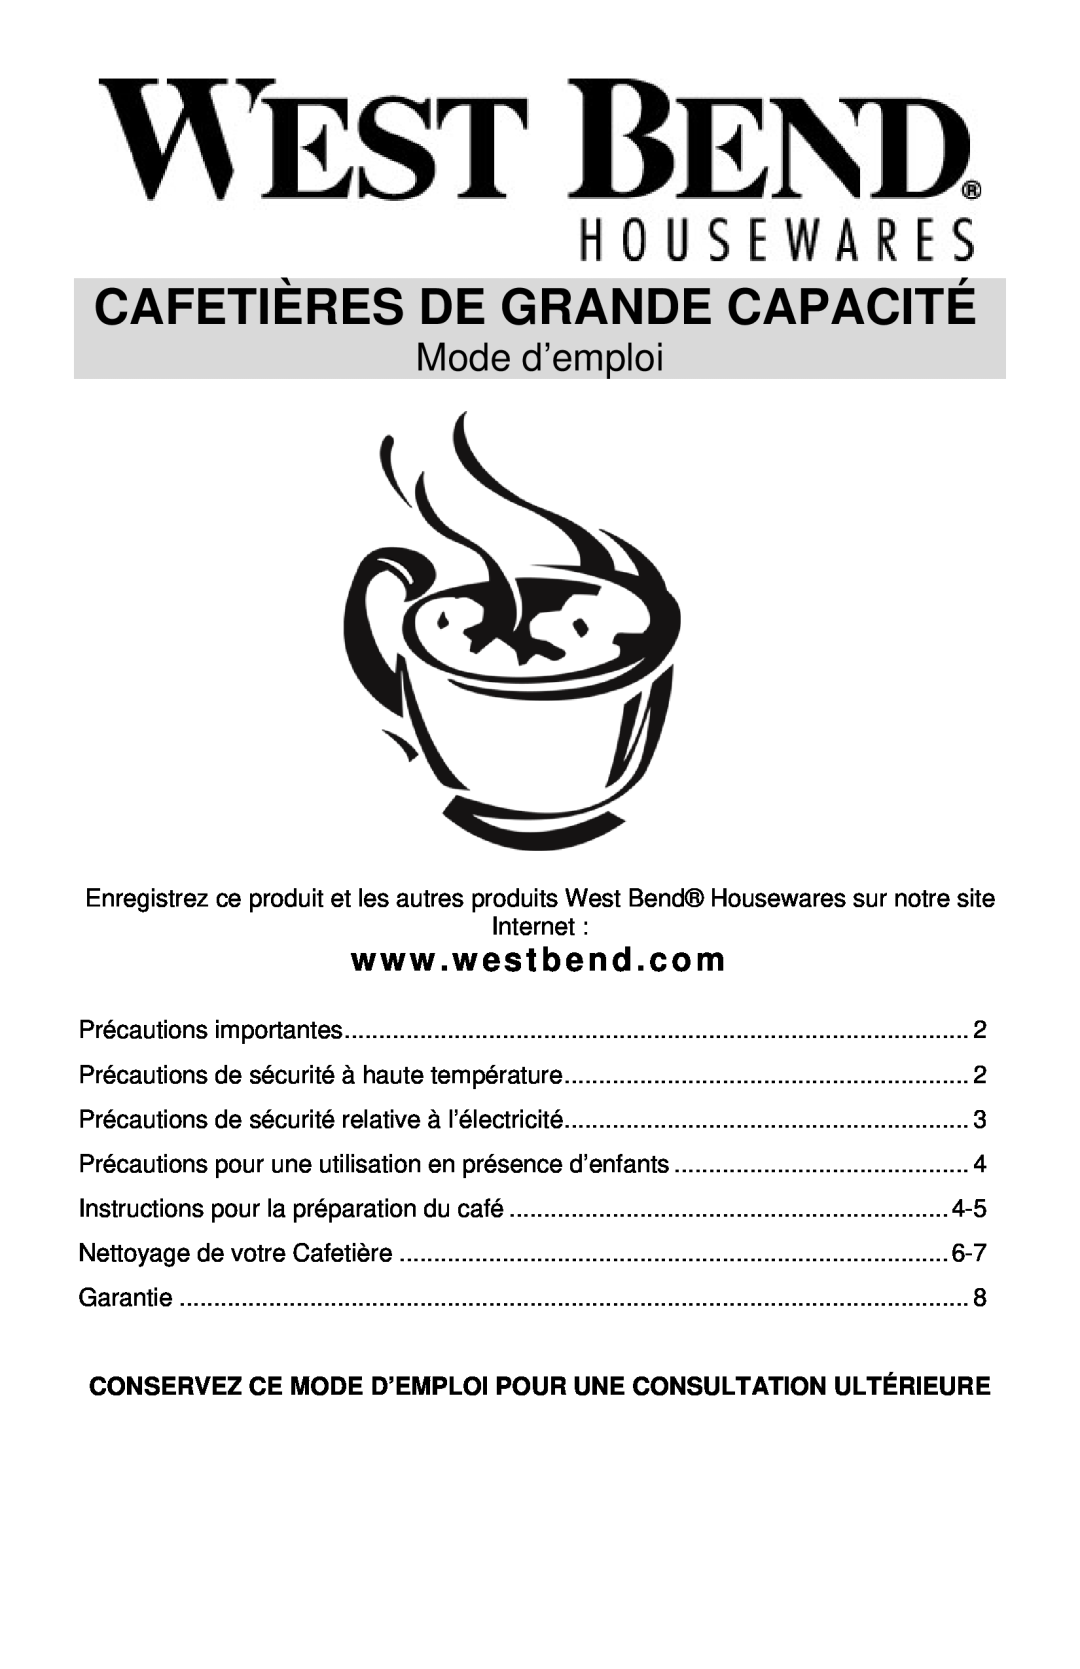 West Bend LARGE CAPACITY COFFEEMAKERS instruction manual Cafetières De Grande Capacité, Mode d’emploi, www . westbend . com 